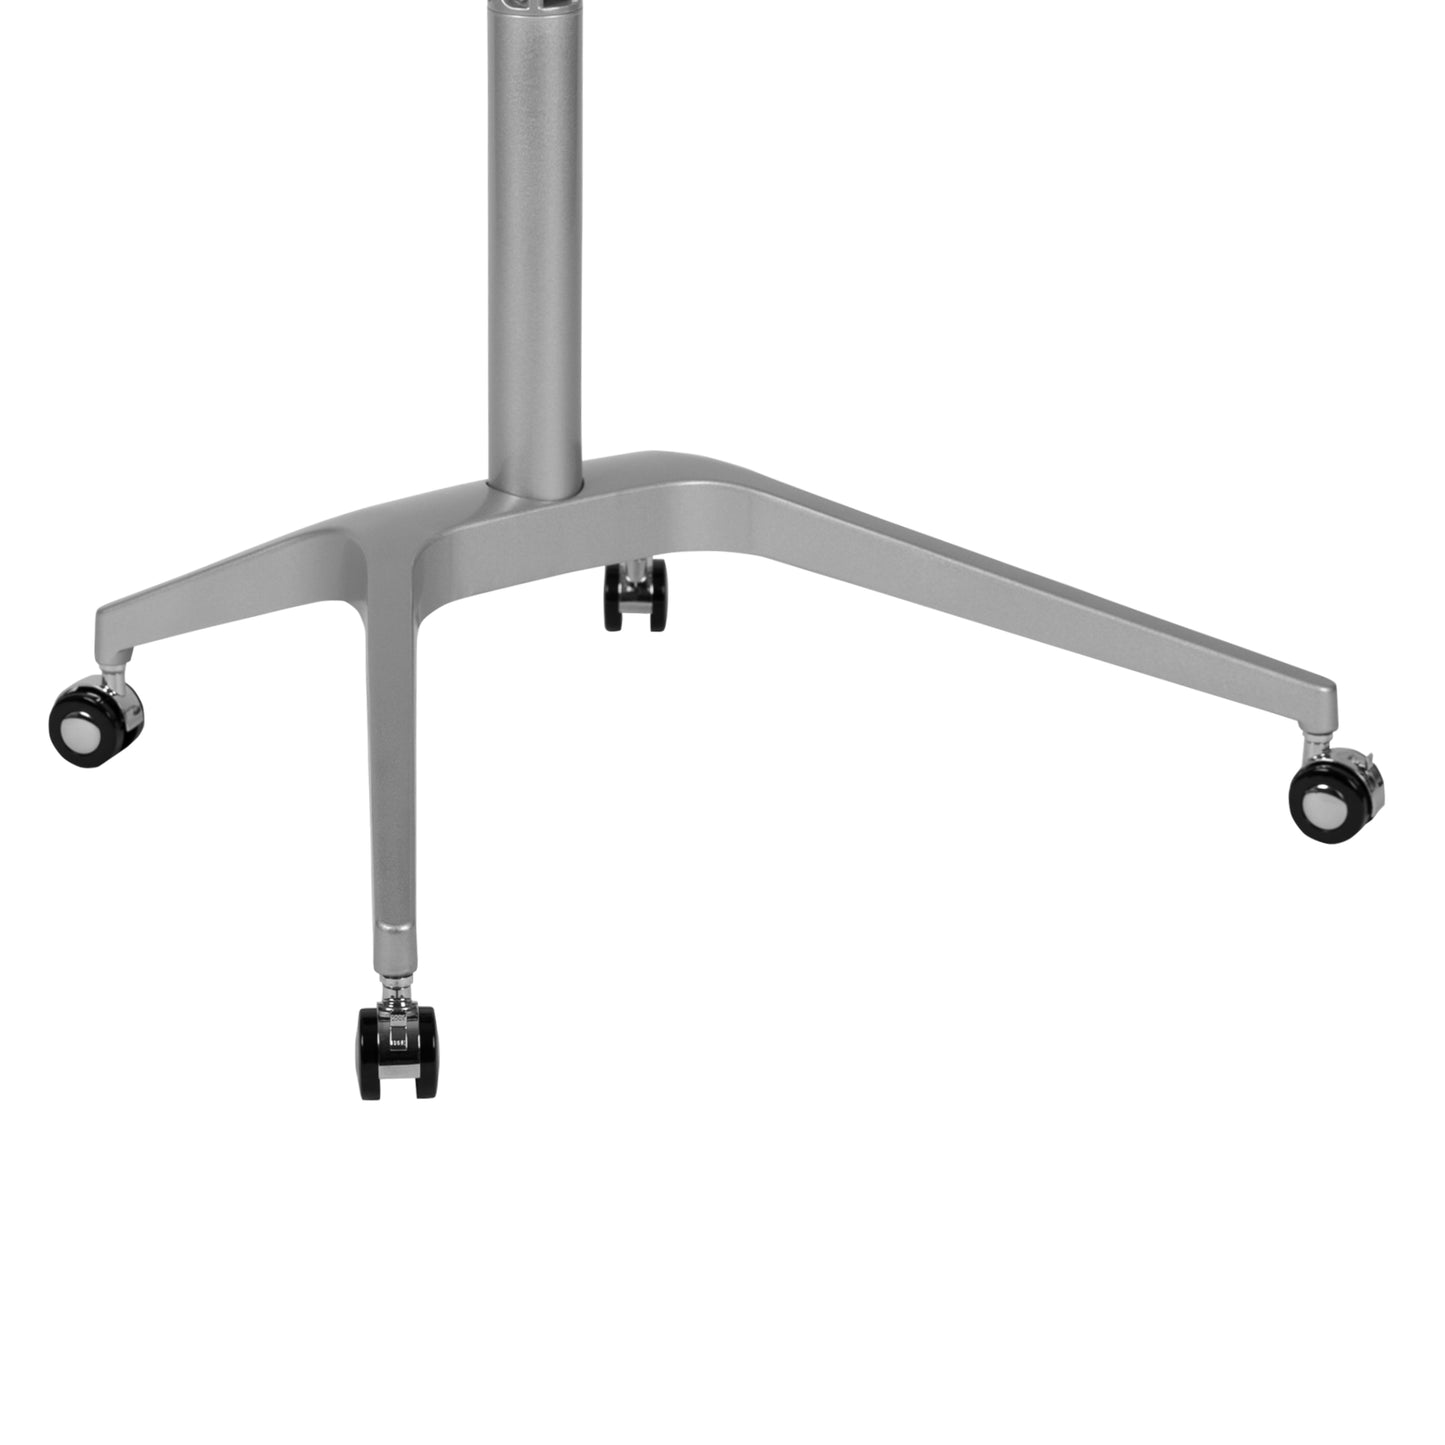 Black Mobile Sit to Stand Desk NAN-IP-10-BK-GG